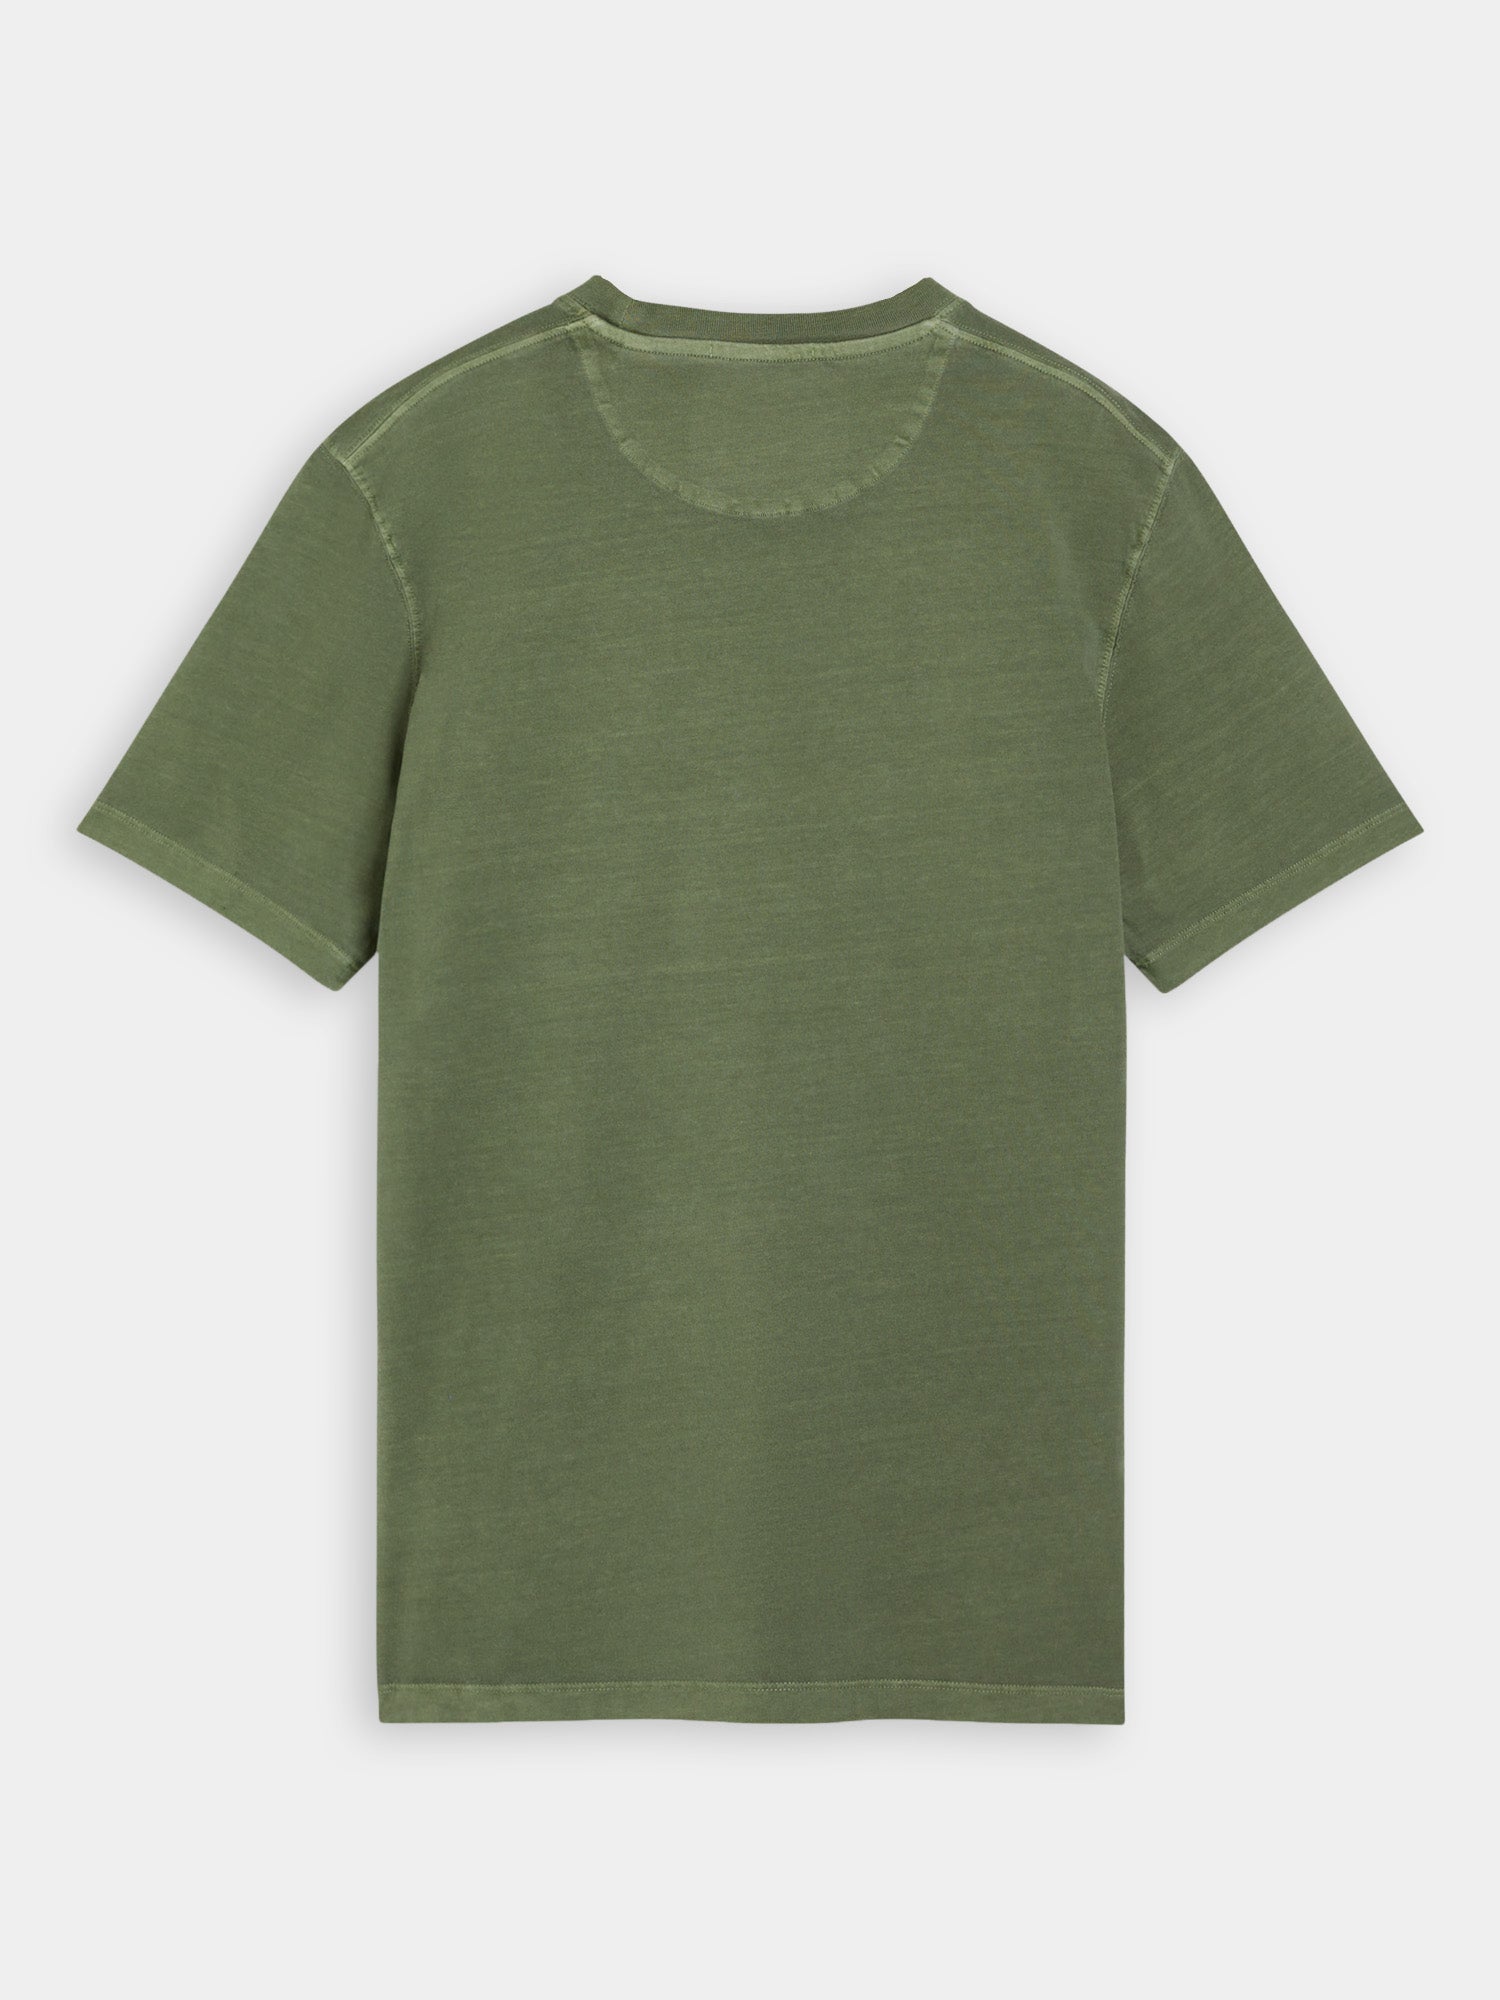 Garment-dyed logo t-shirt - Field Green